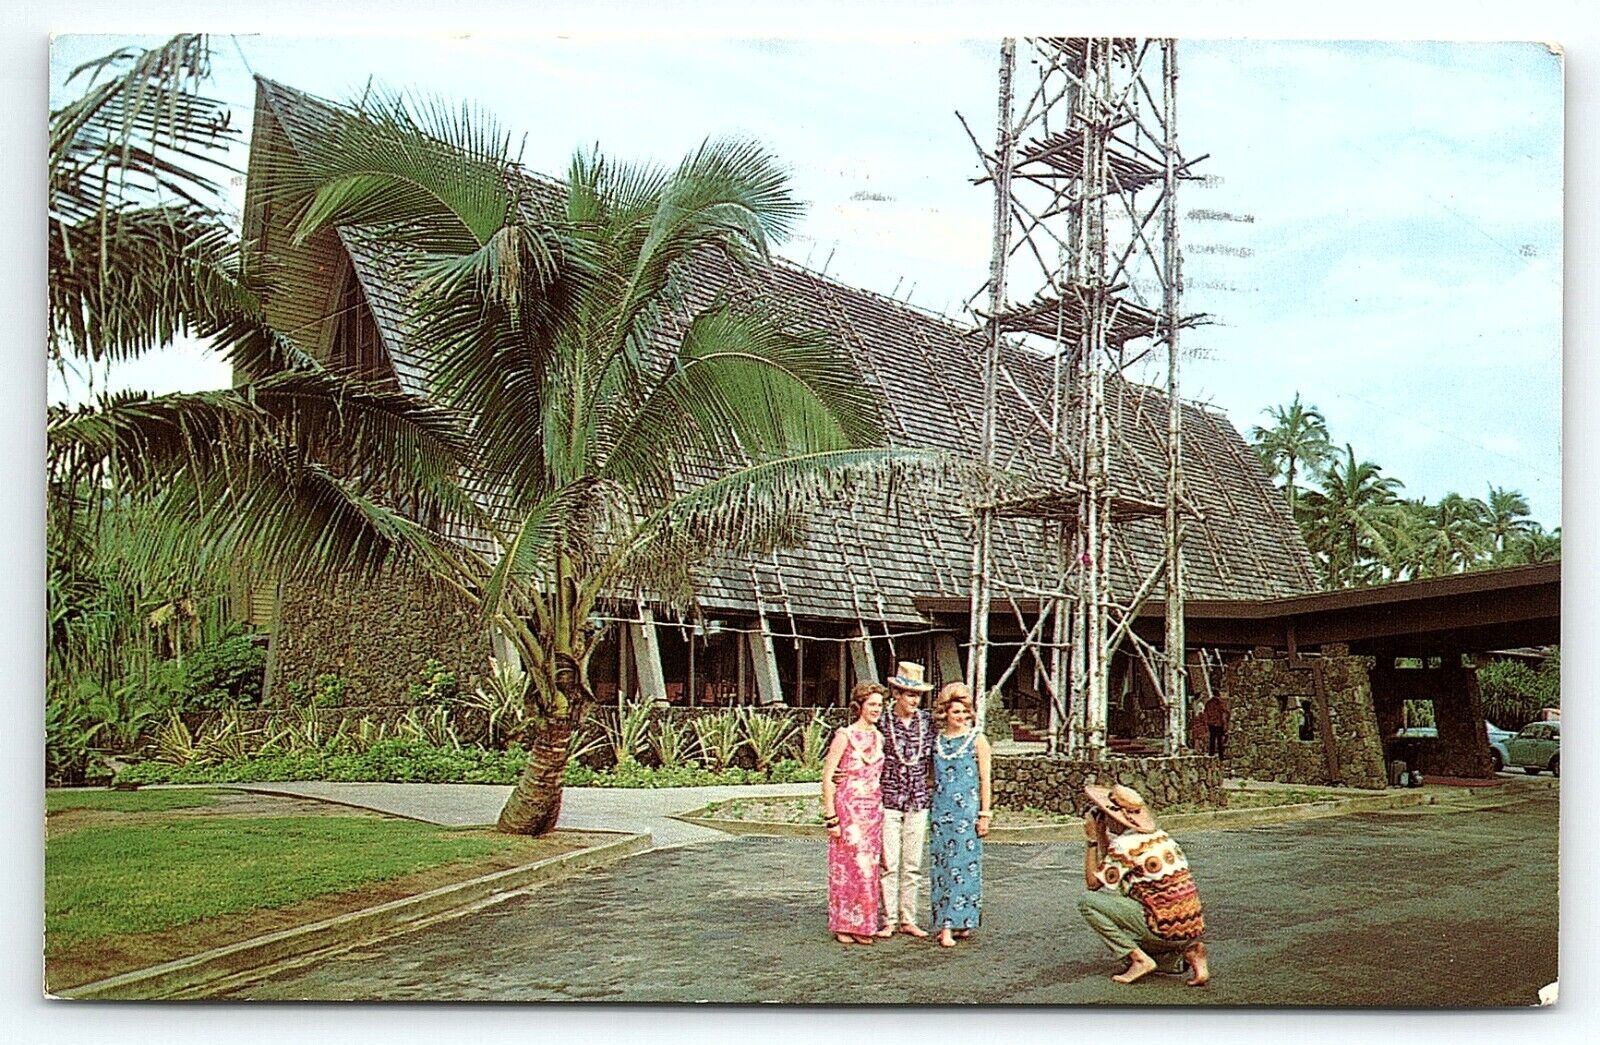 1960s LIHUE KAUAI HAWAII  COCO PALMS RESORTS  TOURISTS PALM TREES POSTCARD P2358